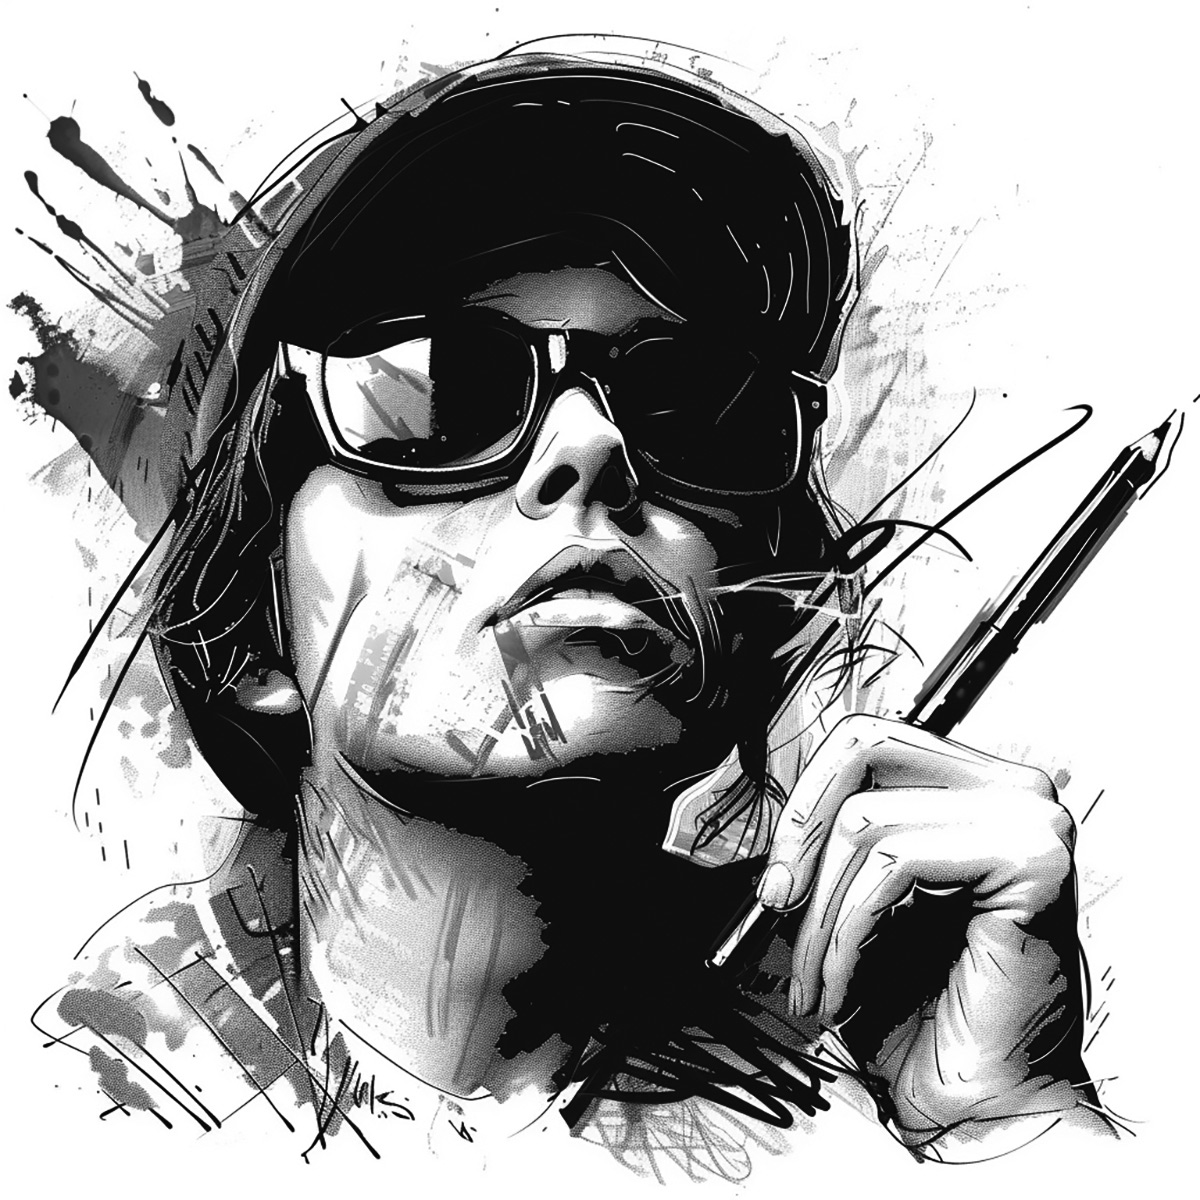 Grafikdesigner als Schwarz-Weiß-Zeichnung einer männlichen Person mit Hut und Sonnenbrille